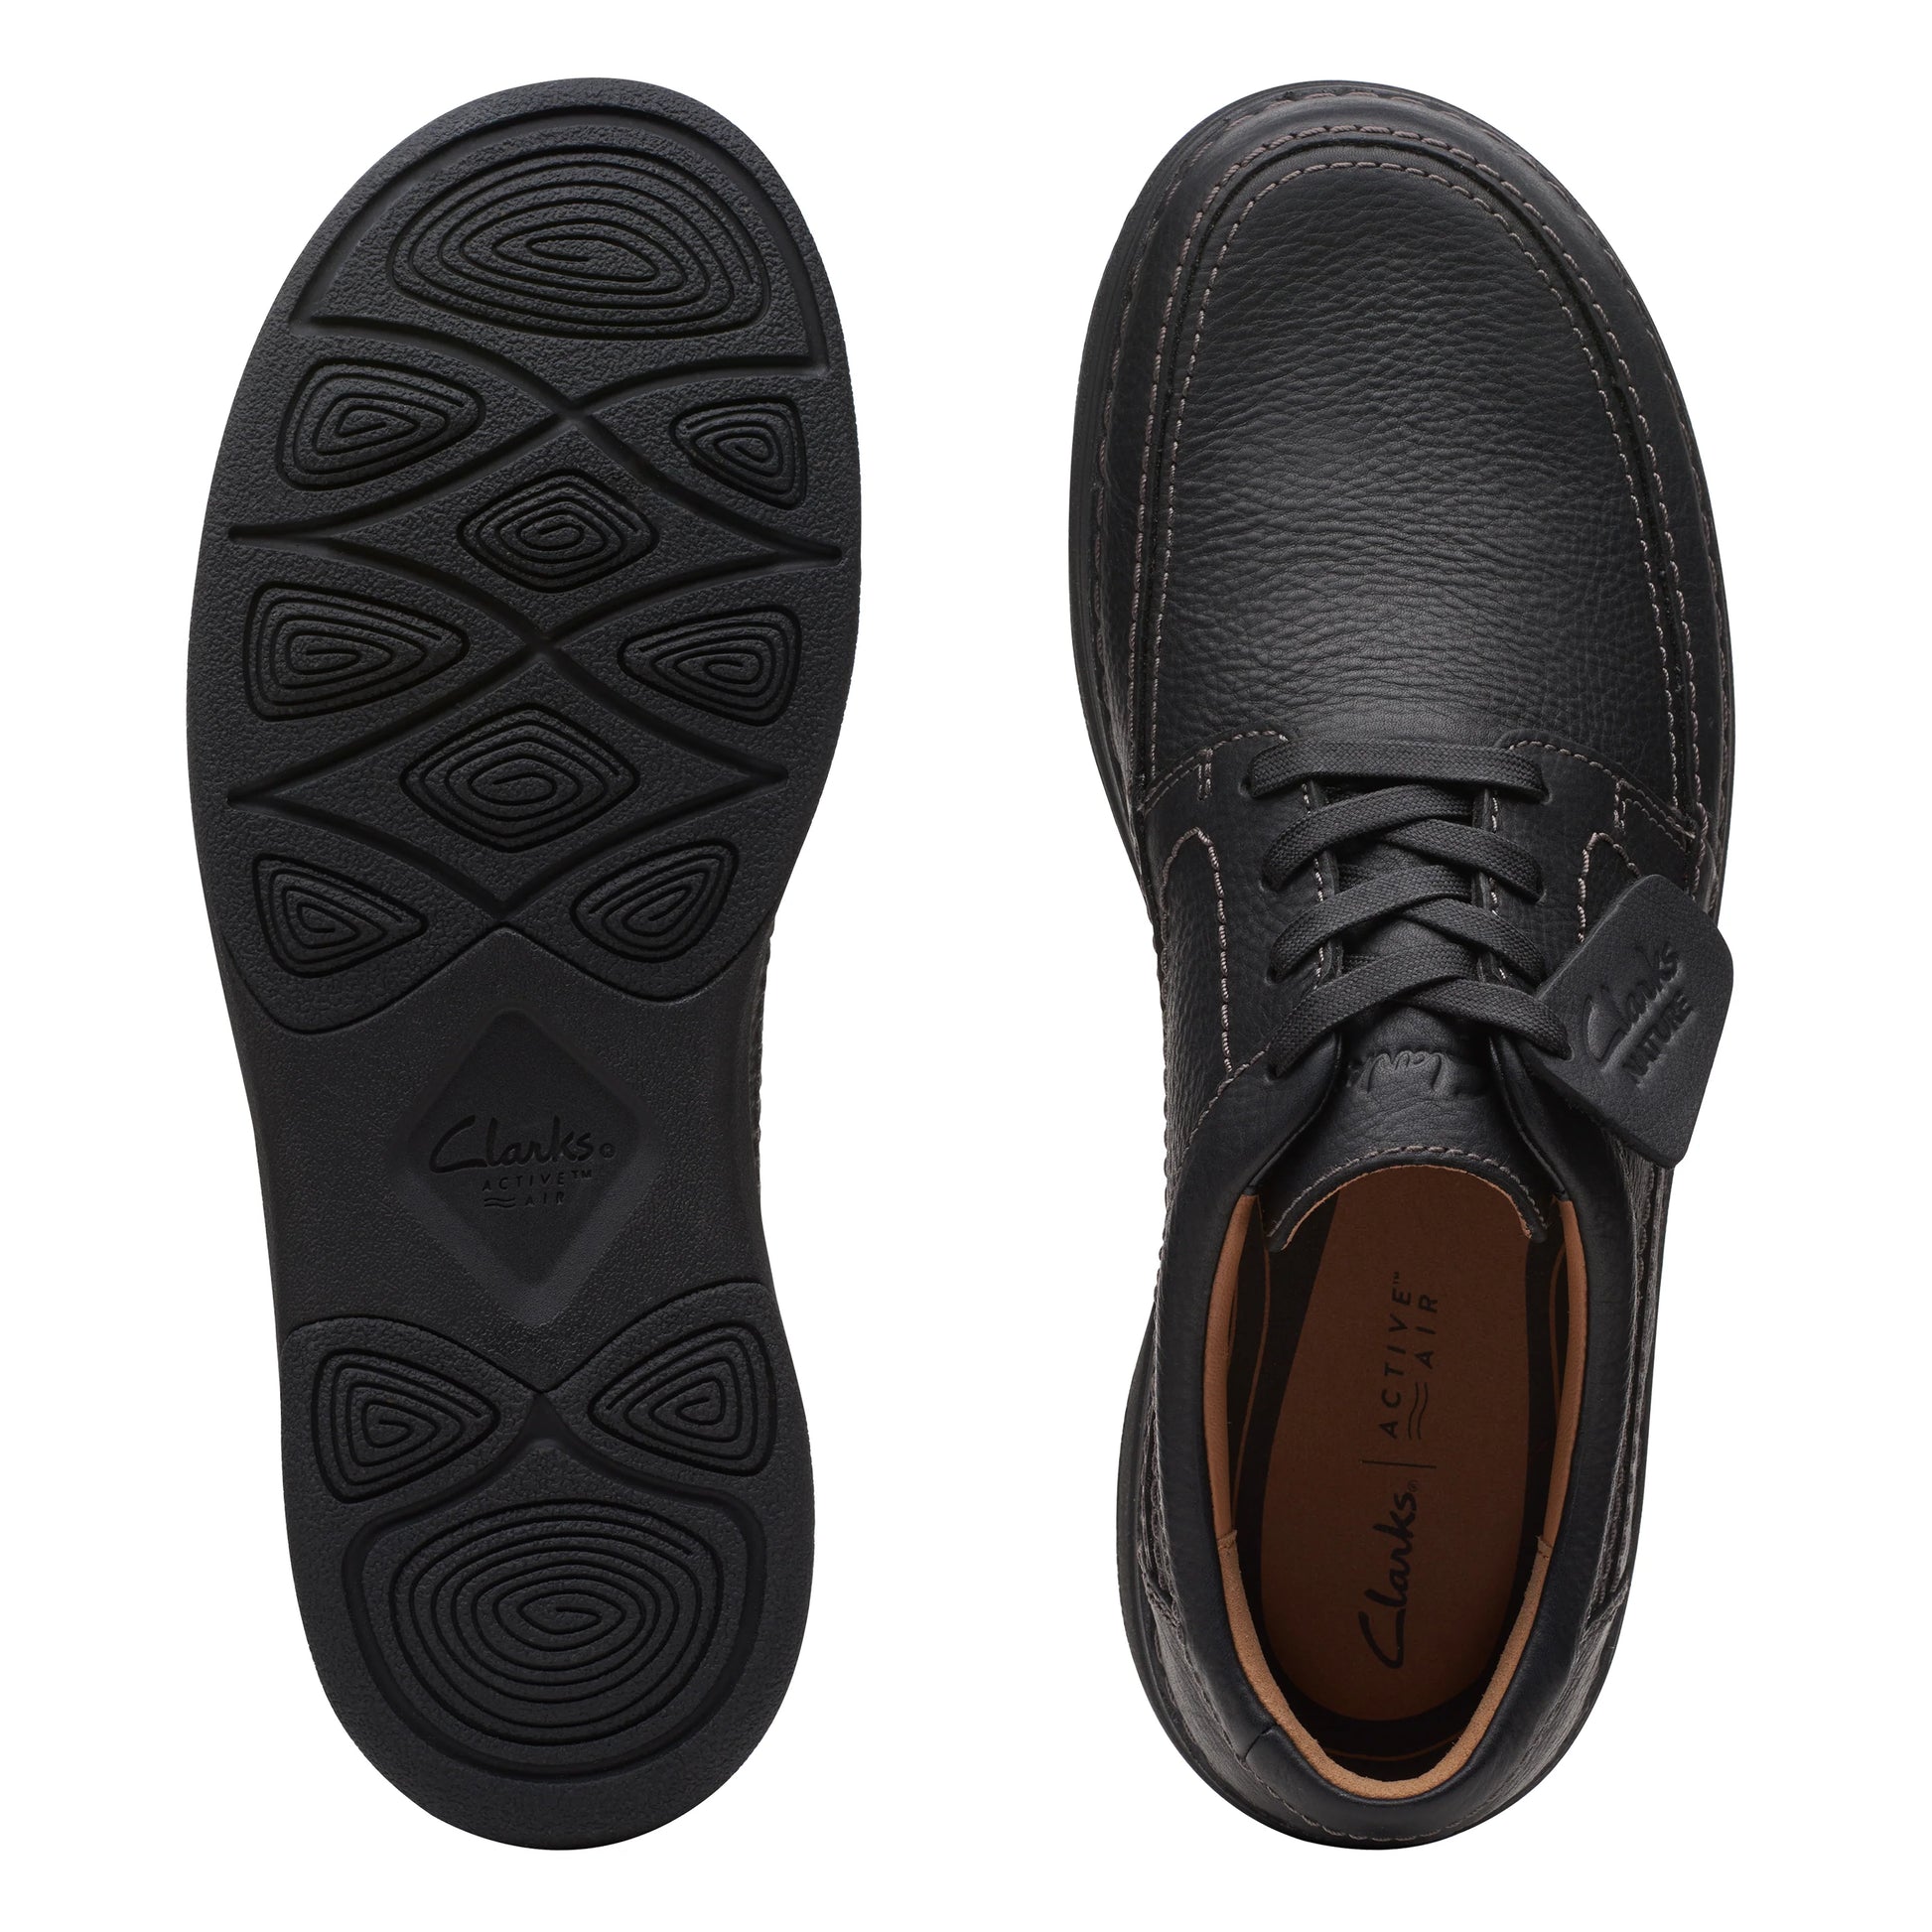 Zapatos Derby De La Marca Clarks Para Hombre Modelo Nature Lo Black Leather En Color Negro